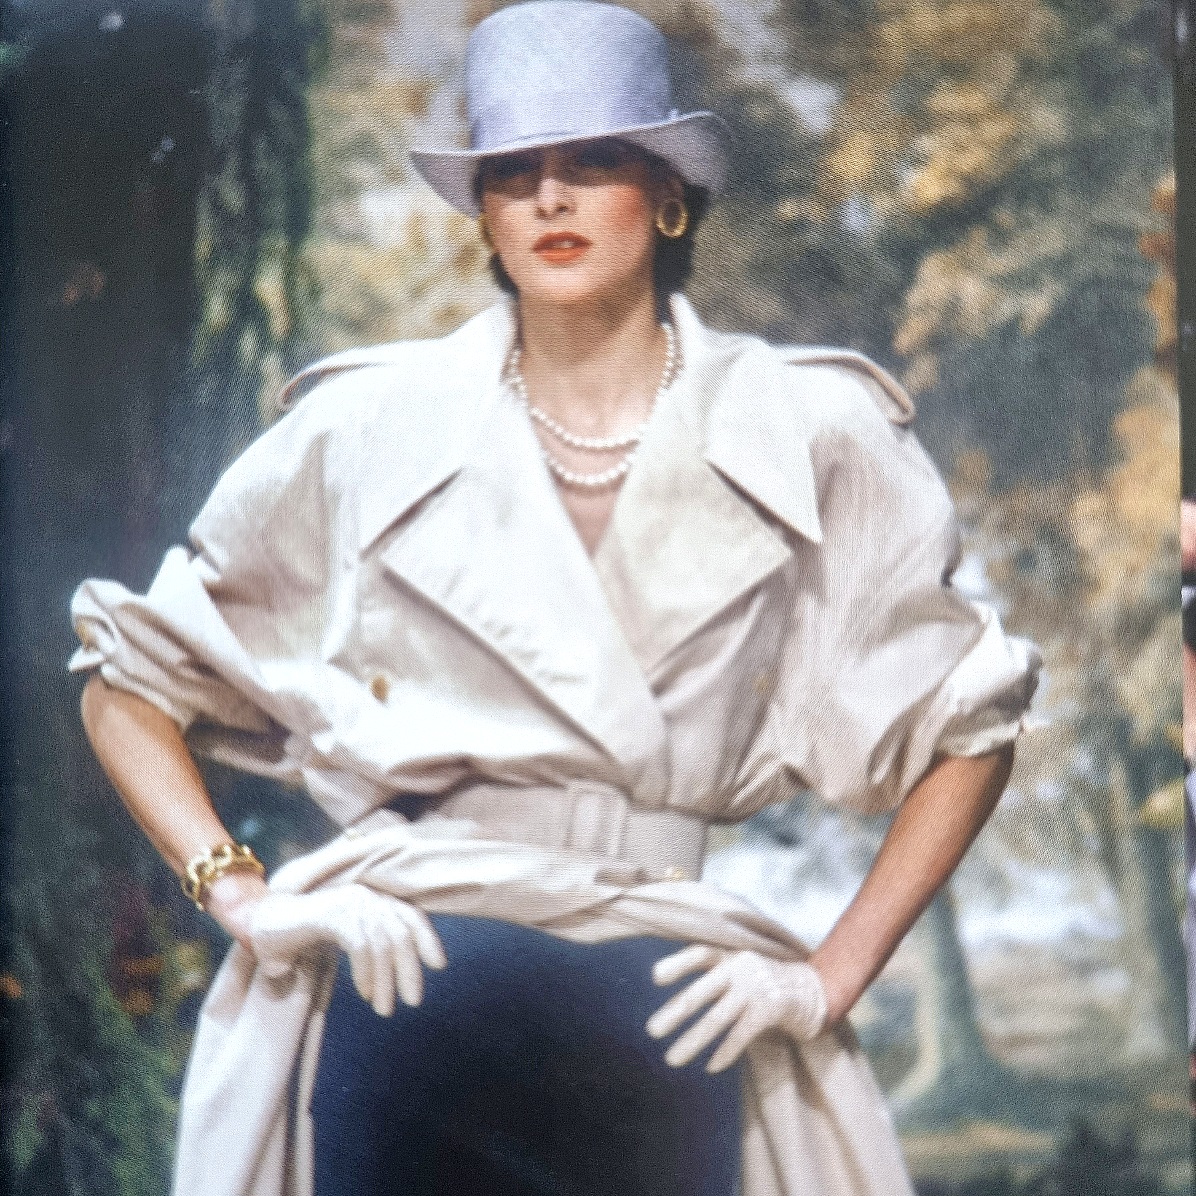 CHANEL look / Spring/Summer 1985 Haute Couture / CHANEL Catwalk. Karl Lagerfeld - die Kollektionen / München, London, New York, 2016.